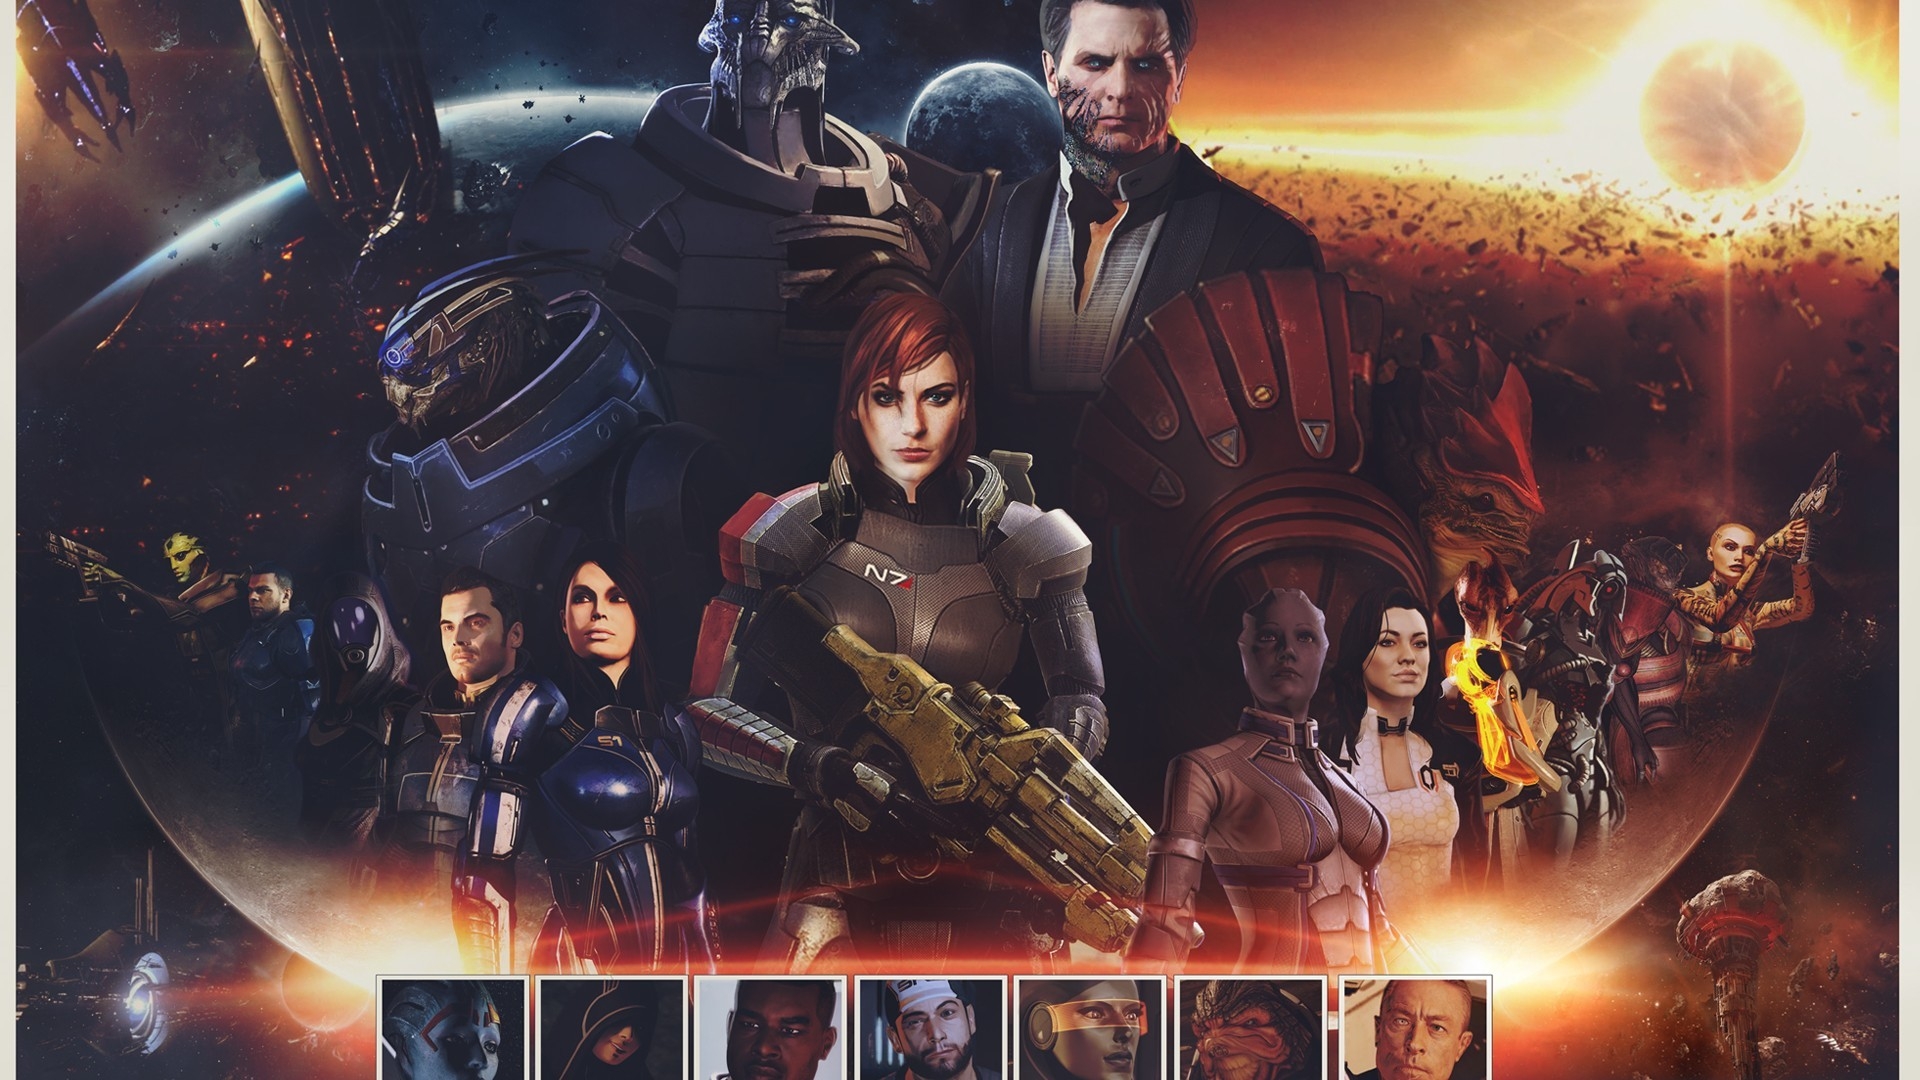 Mass Effect Zaeed Massani for 1920 x 1080 HDTV 1080p resolution